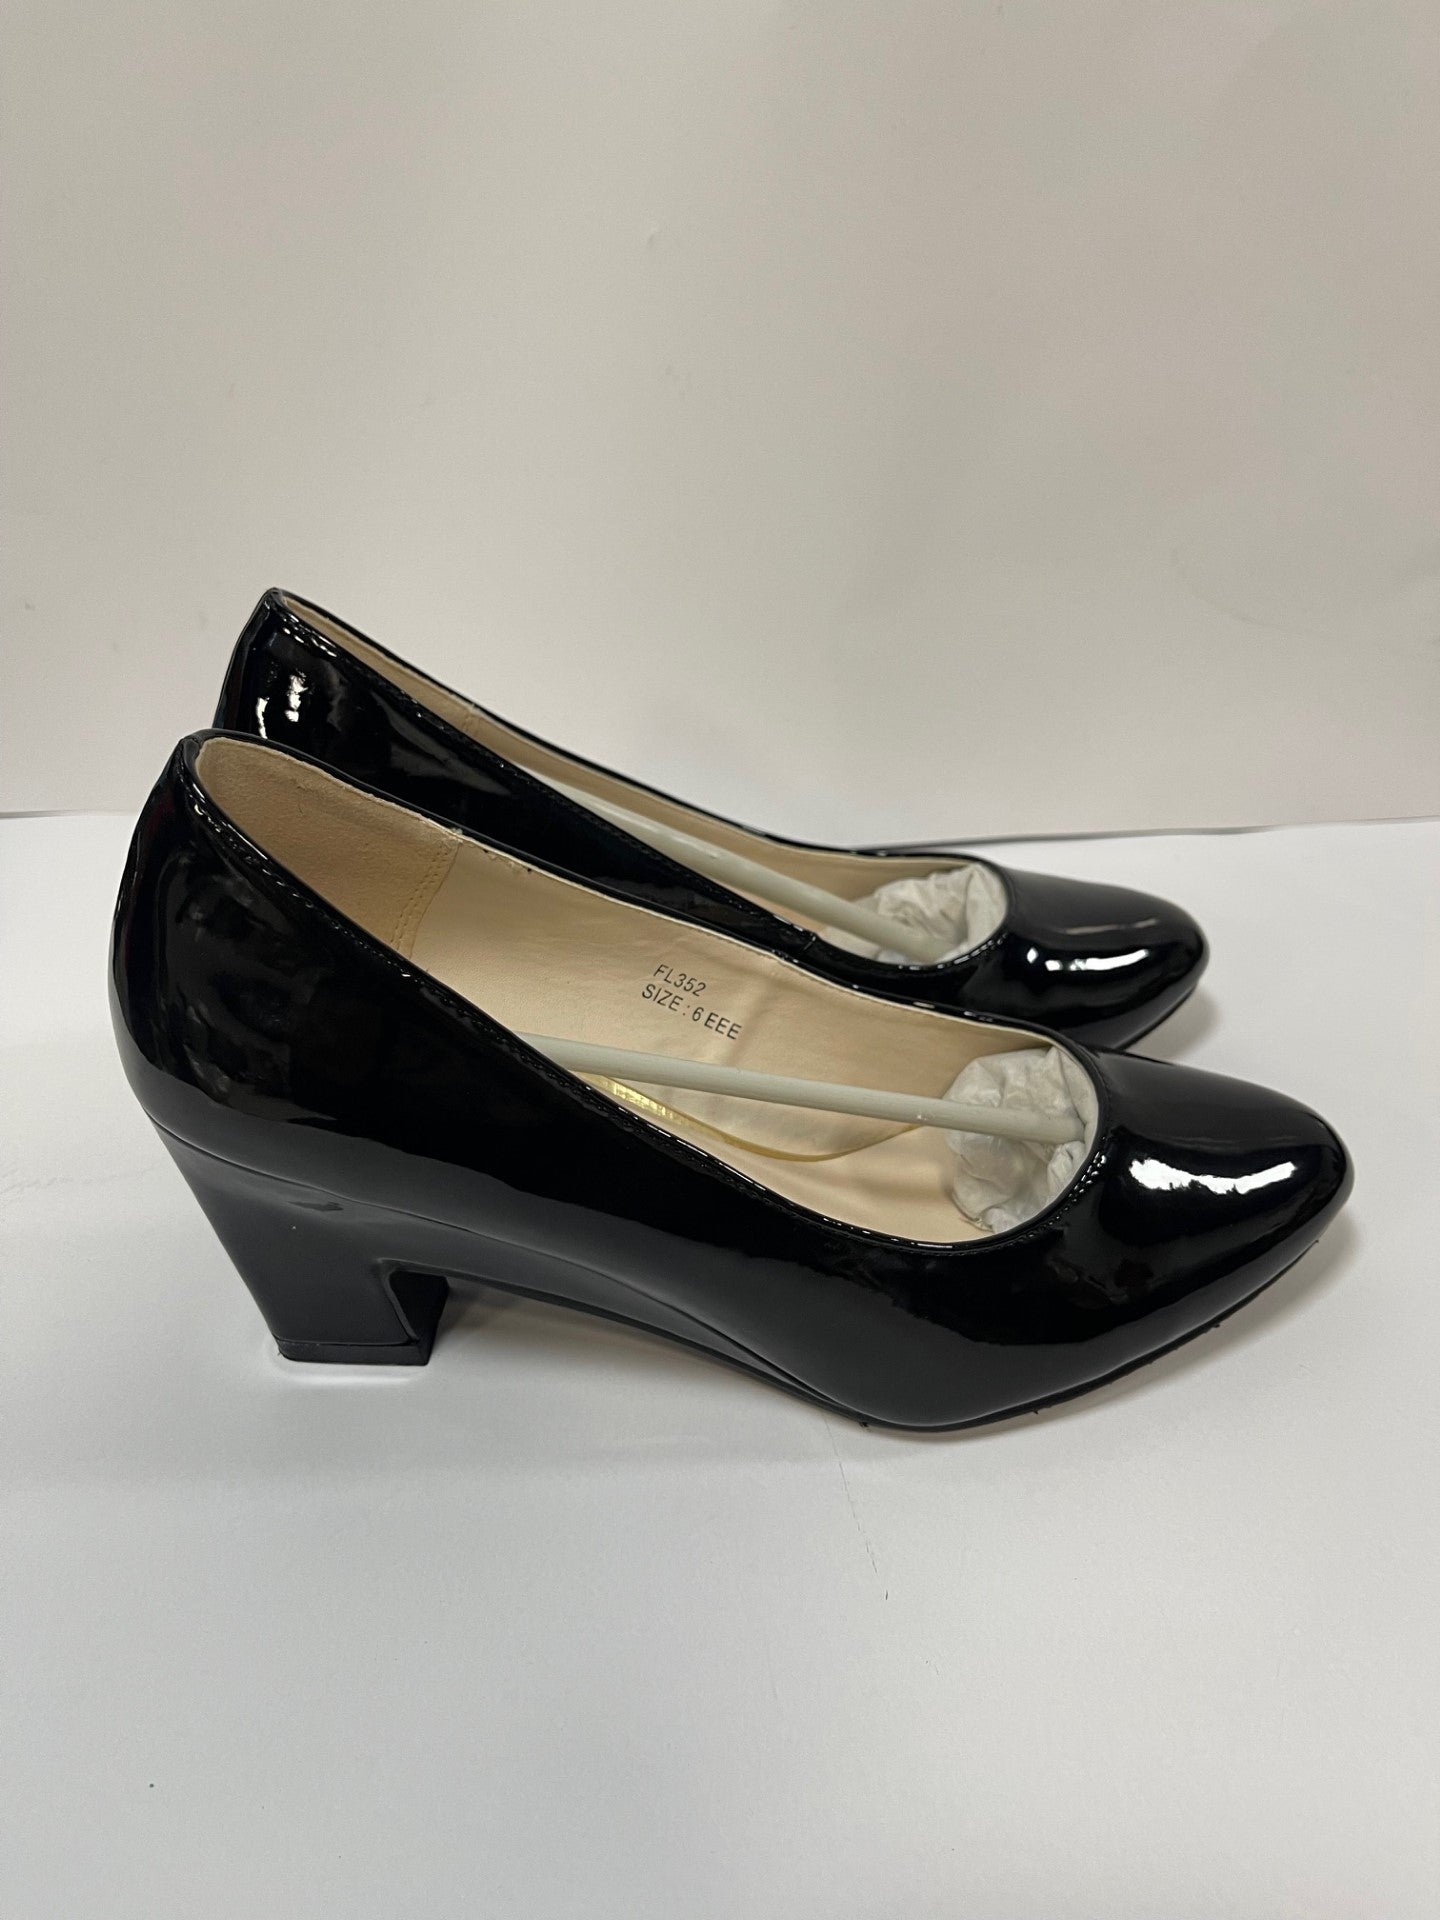 BNWT Heavenly Soles Black Heel Shoe Size 6